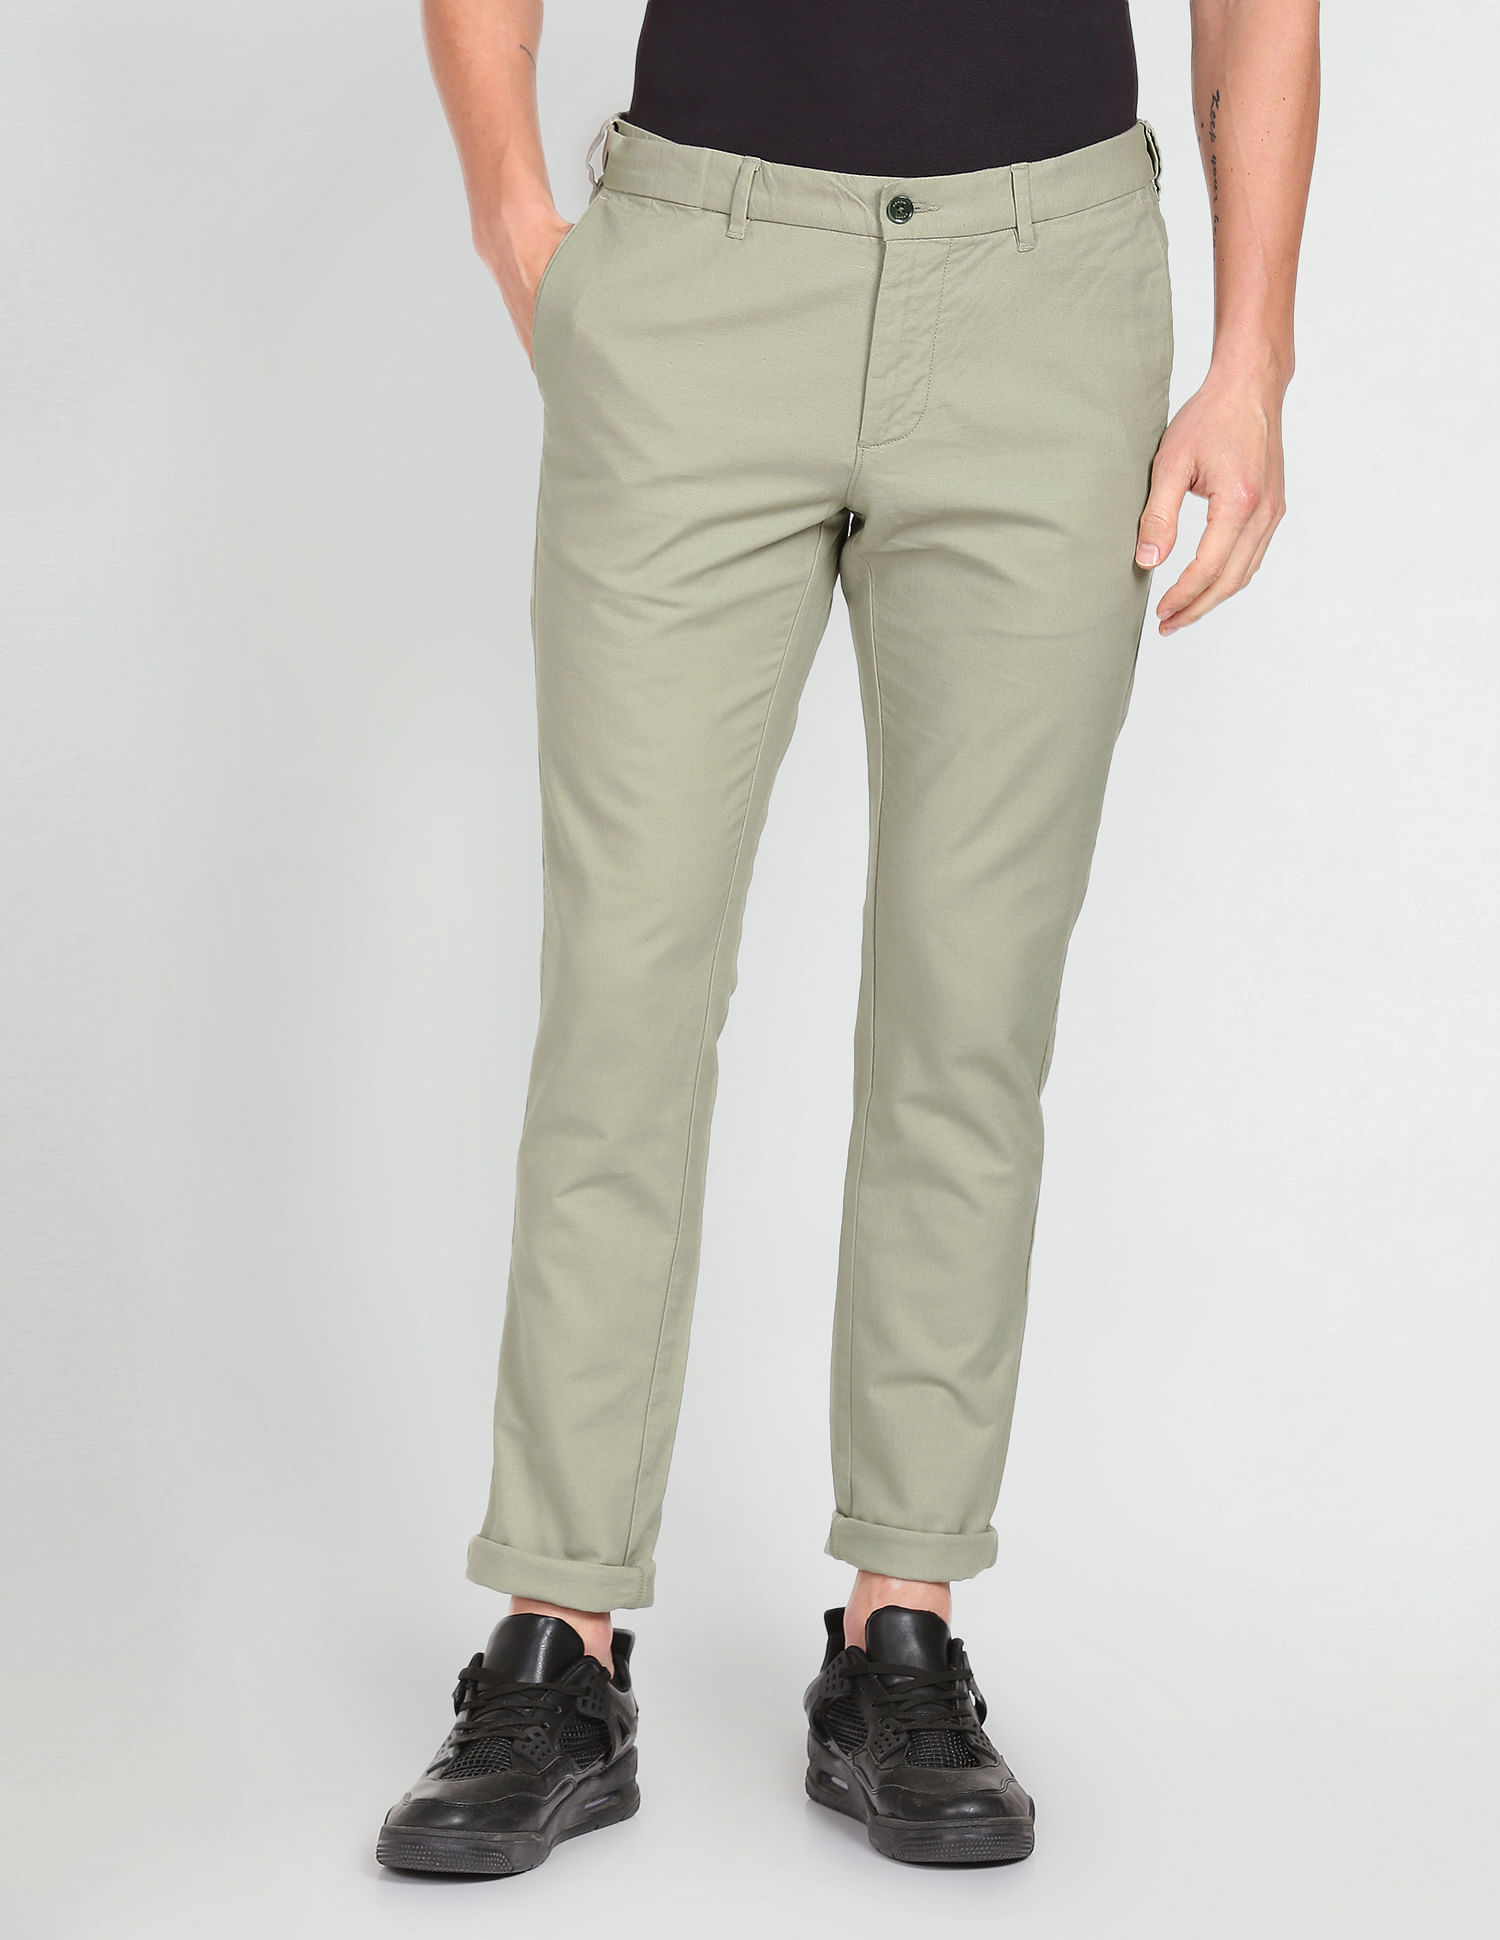 ARROW Slim Fit Men Blue Trousers  Buy ARROW Slim Fit Men Blue Trousers  Online at Best Prices in India  Flipkartcom